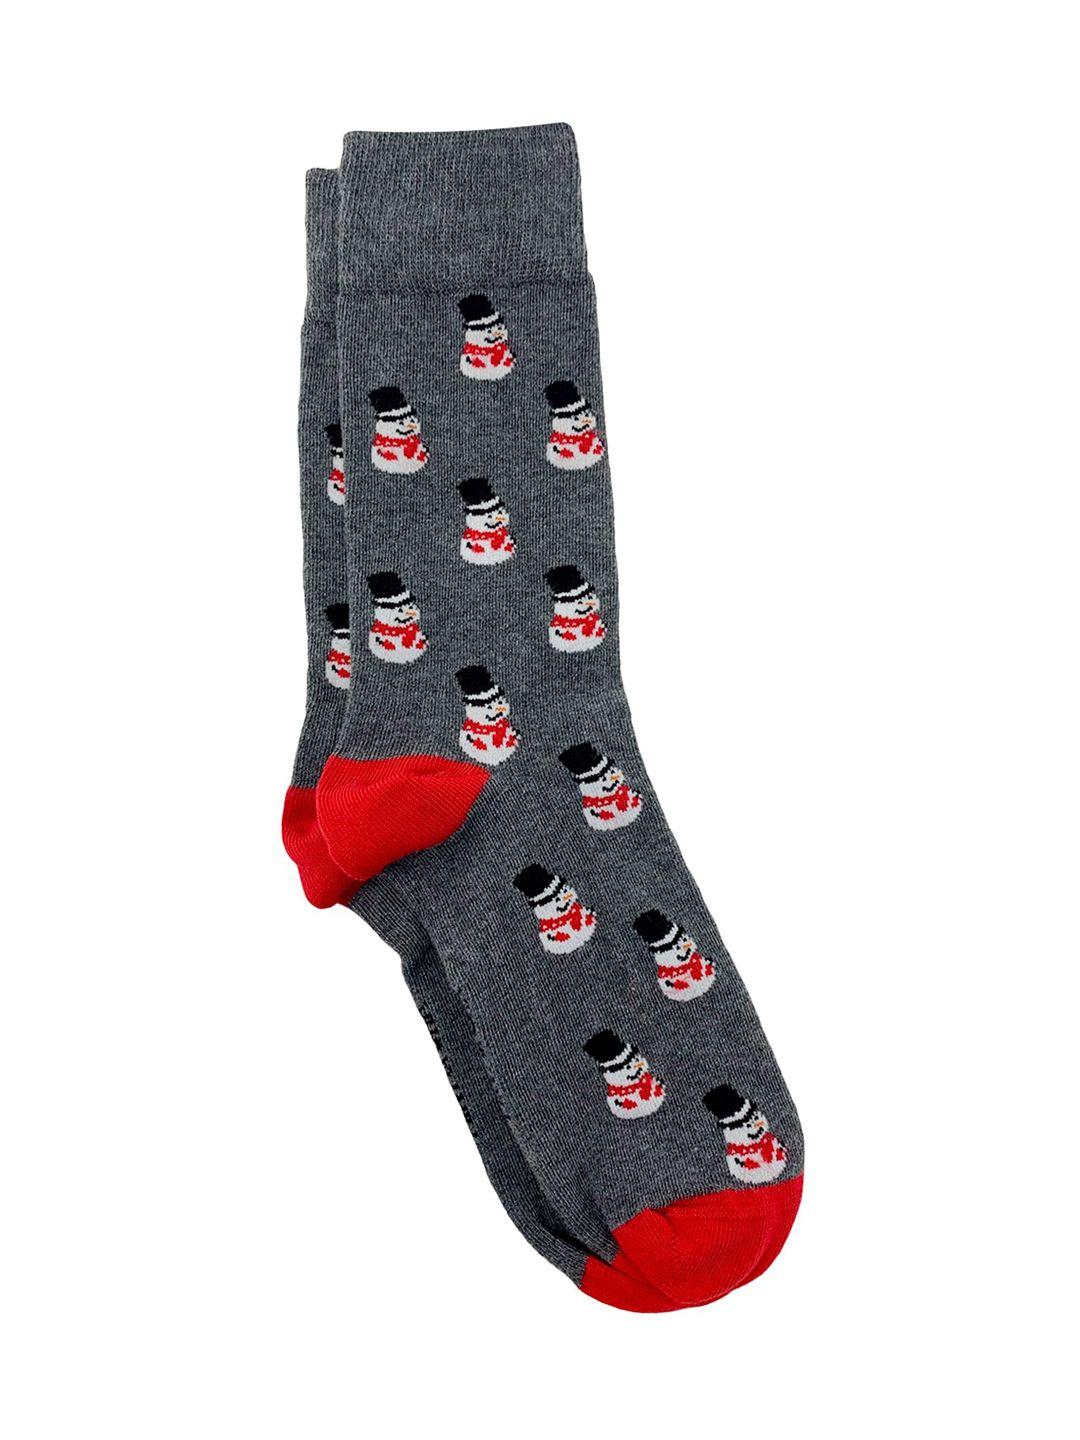 mint-&-oak-men-grey-&-red-patterned-frosty-fun-calf-length-socks